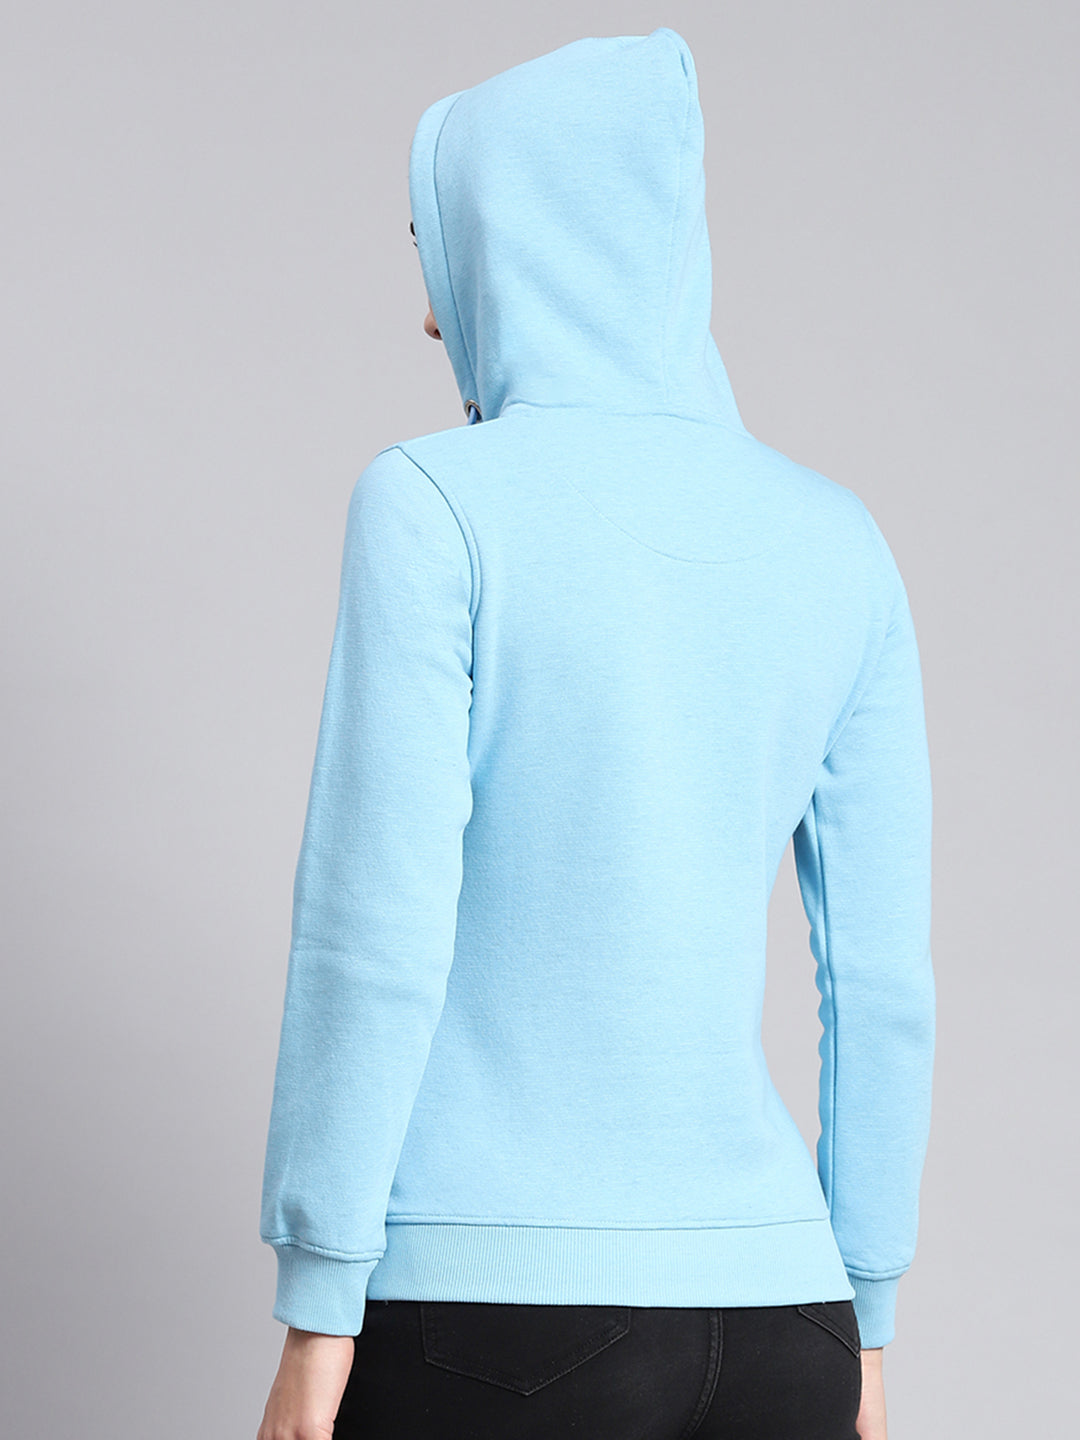 Women Blue Printed Hooded Full Sleeve Sweatshirts